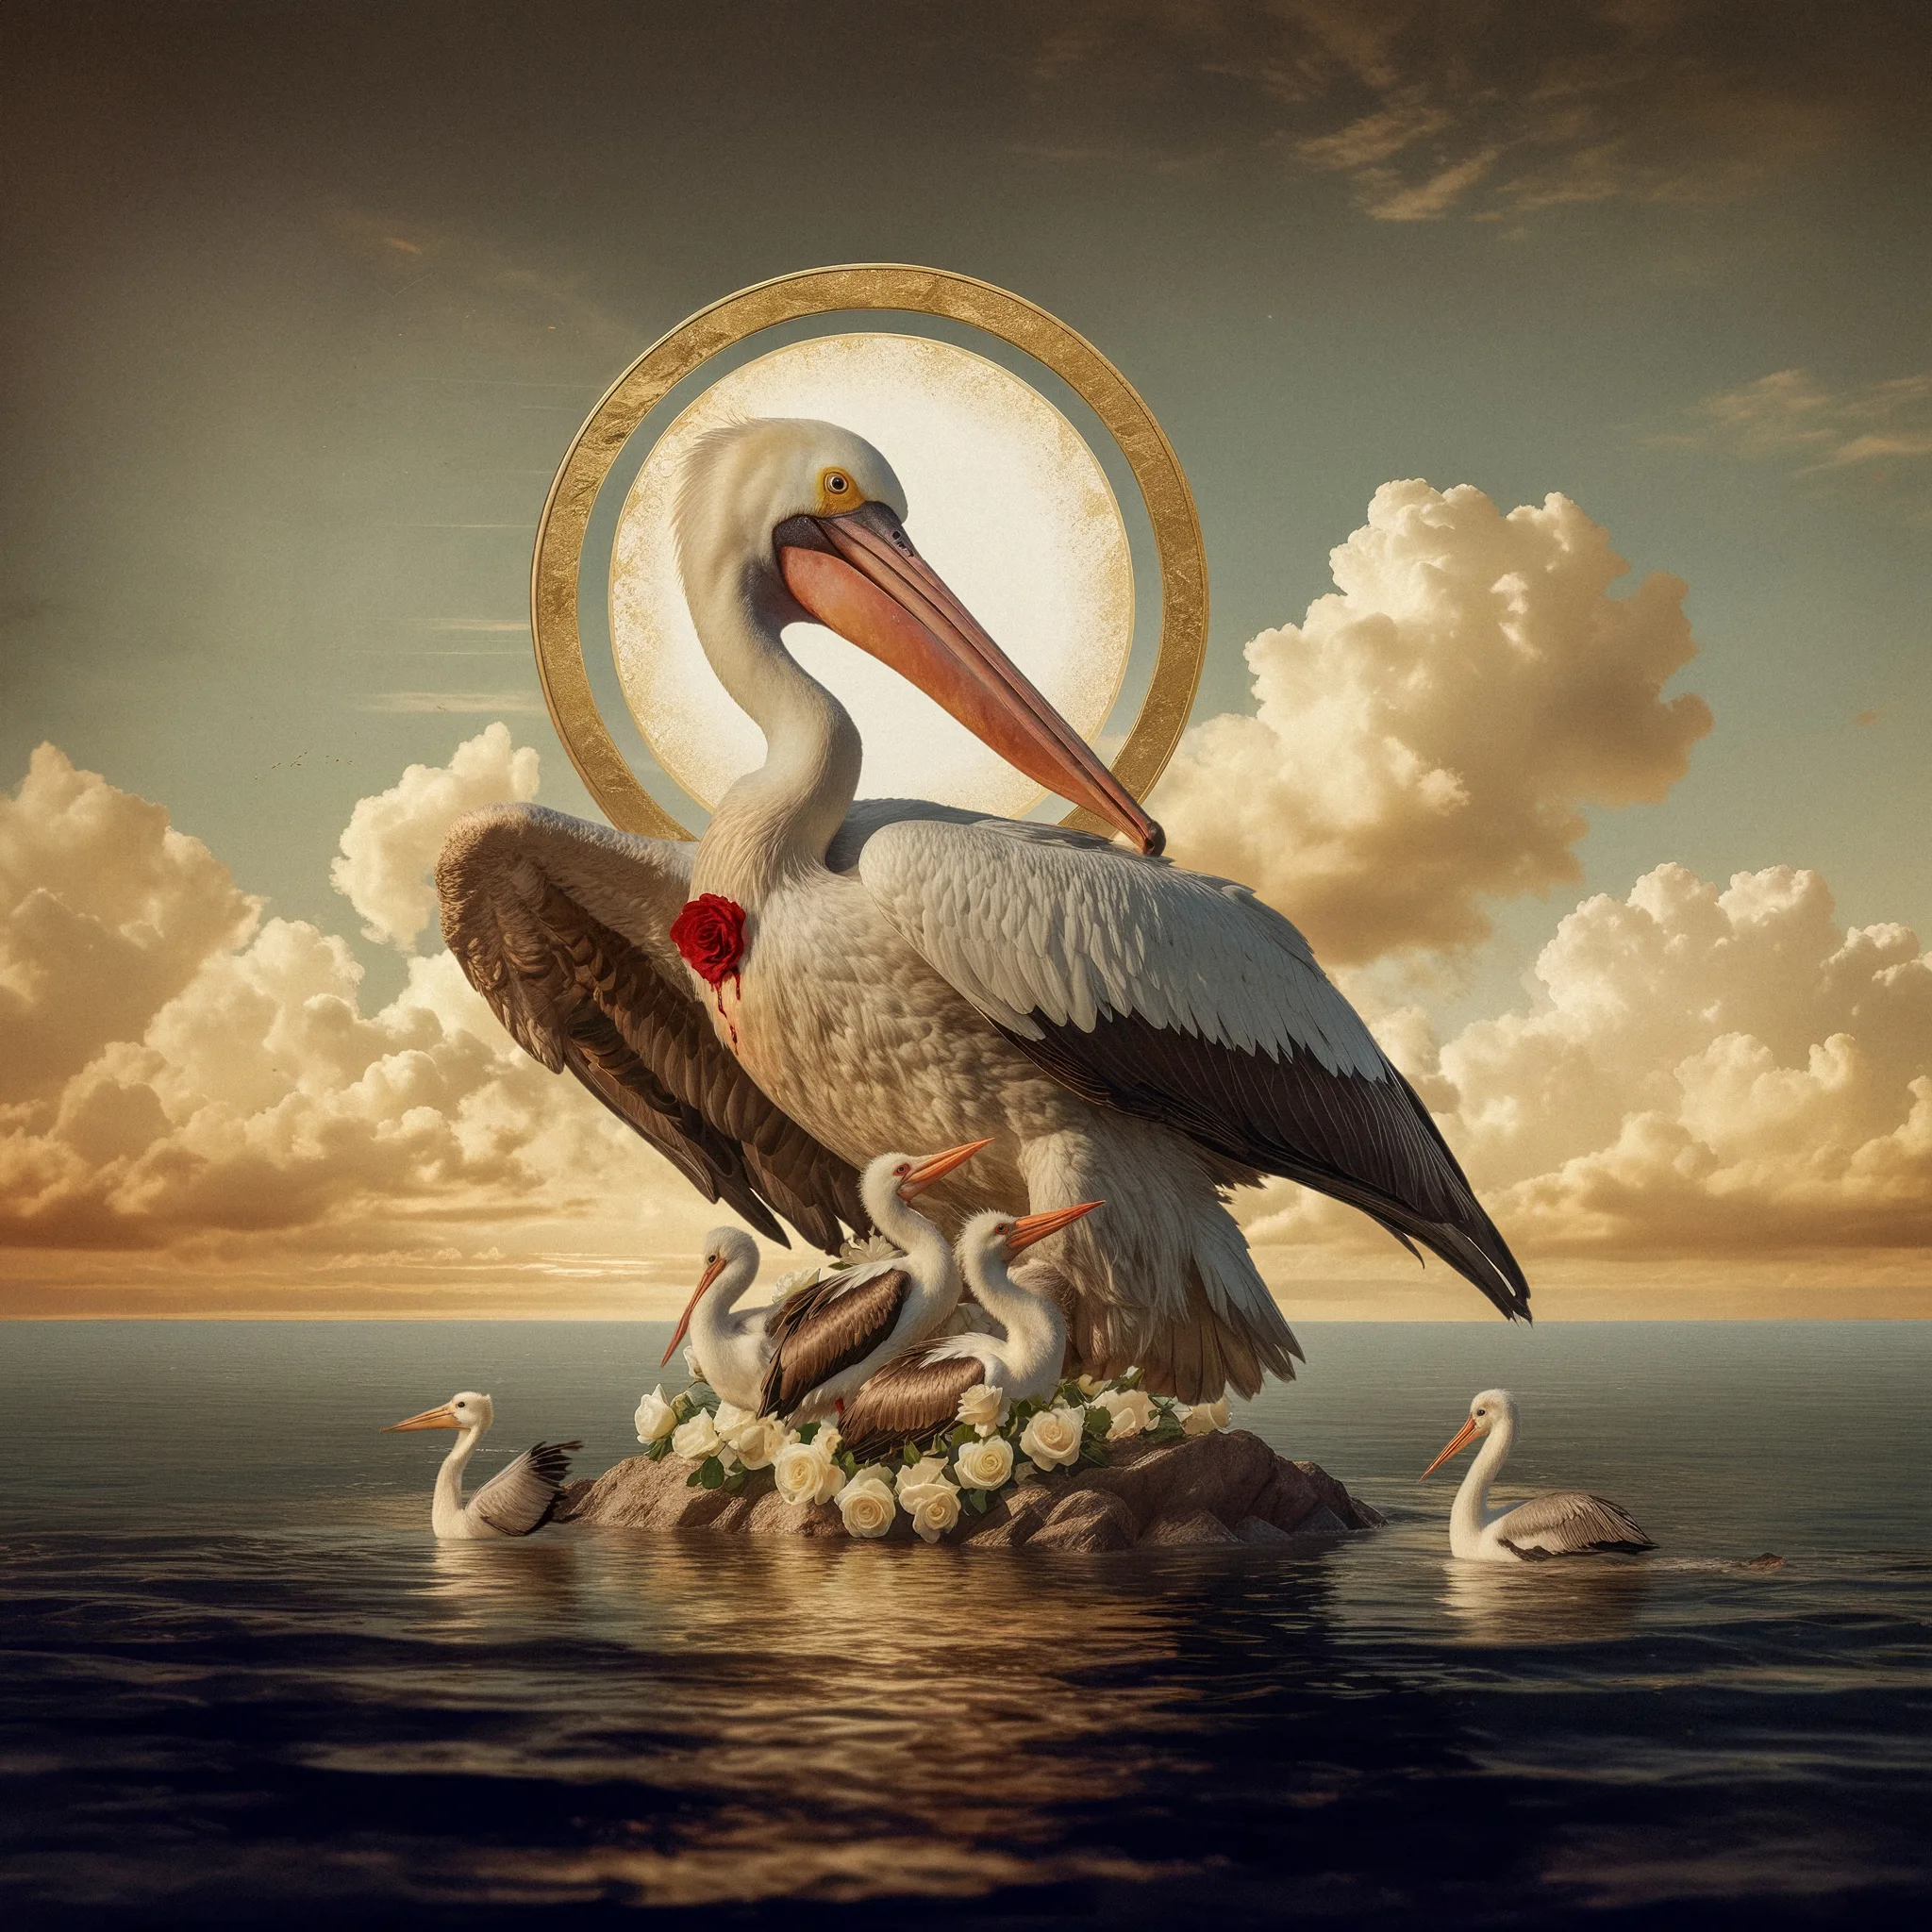 El Pelicano y la Rosa: Una representación esotérica del sacrificio y el amor desinteresado, donde el pelícano alimenta a sus crías con su propia carne, simbolizando la compasión y la entrega total